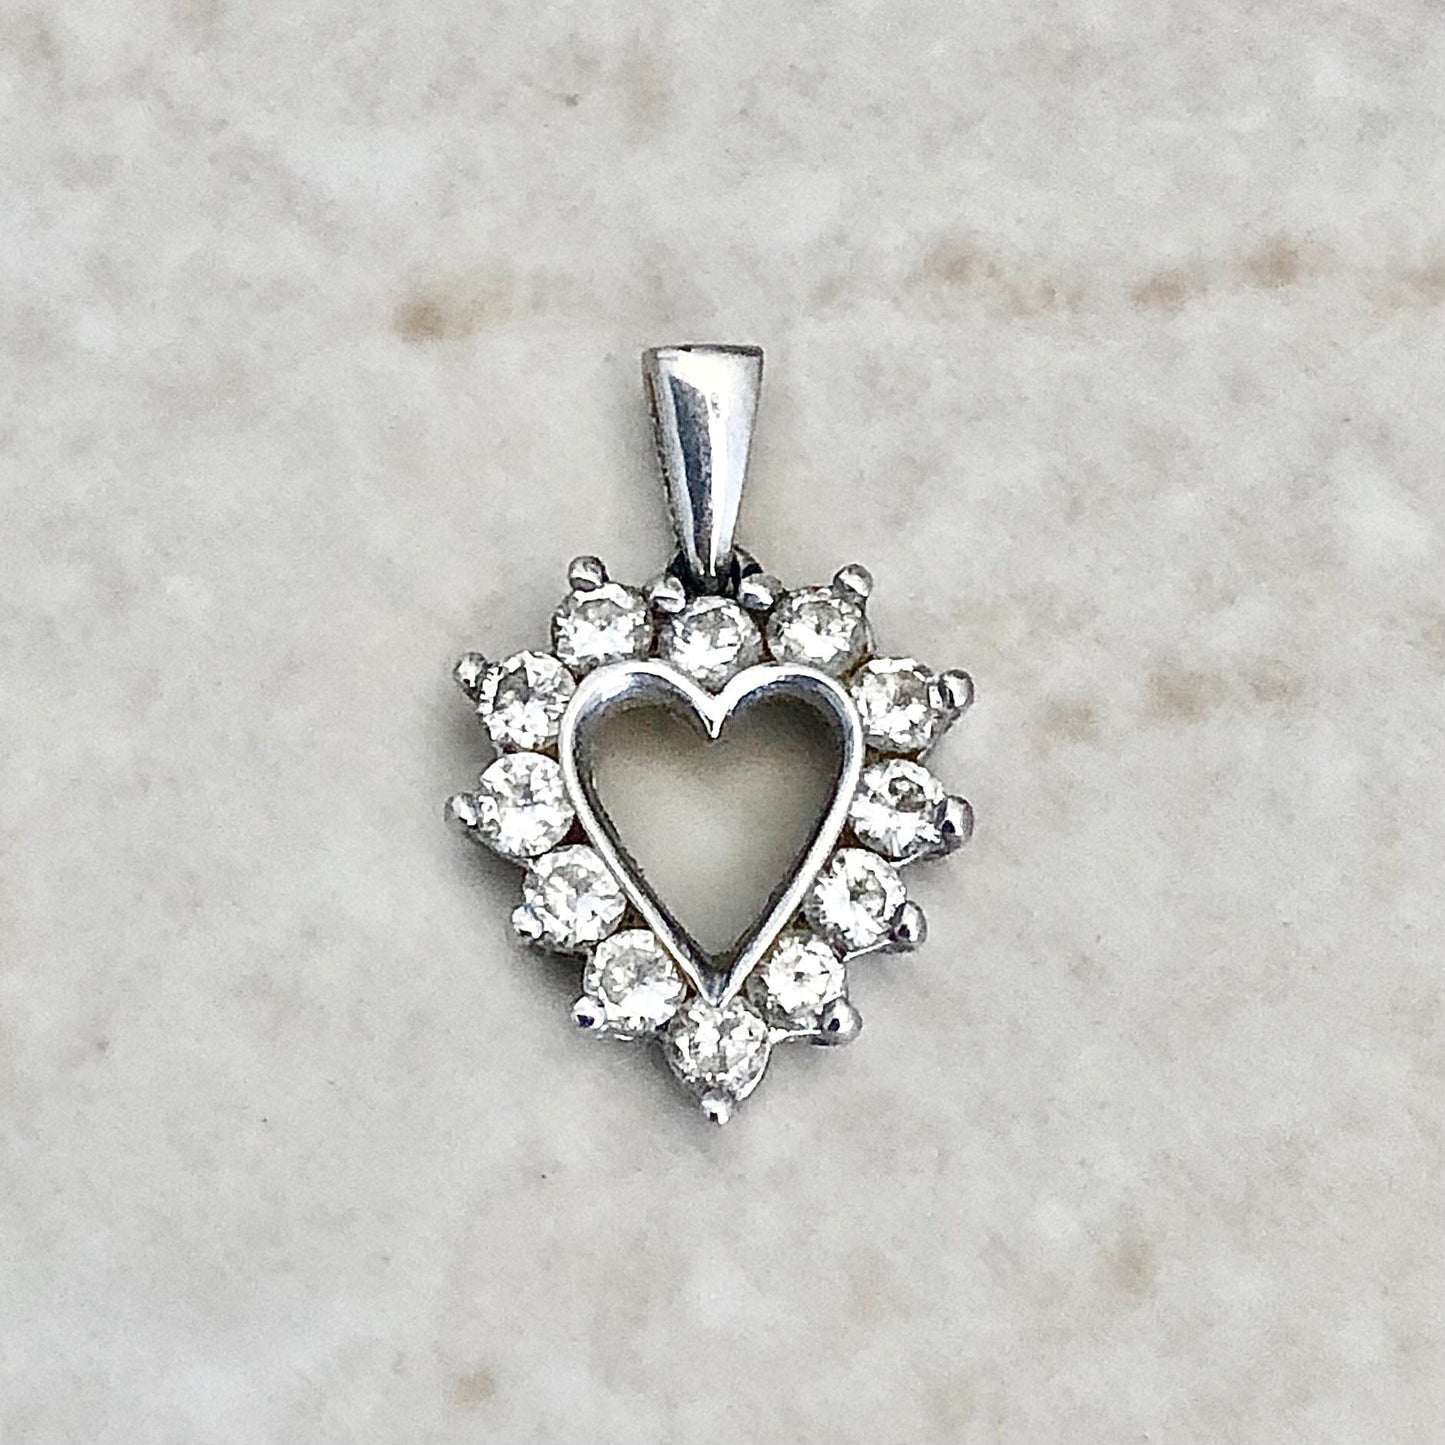 14K Diamond Heart Pendant Necklace - White Gold Diamond Necklace - Heart Necklace - Valentine’s Day Gift - Birthday Gift - Best Gift For Her